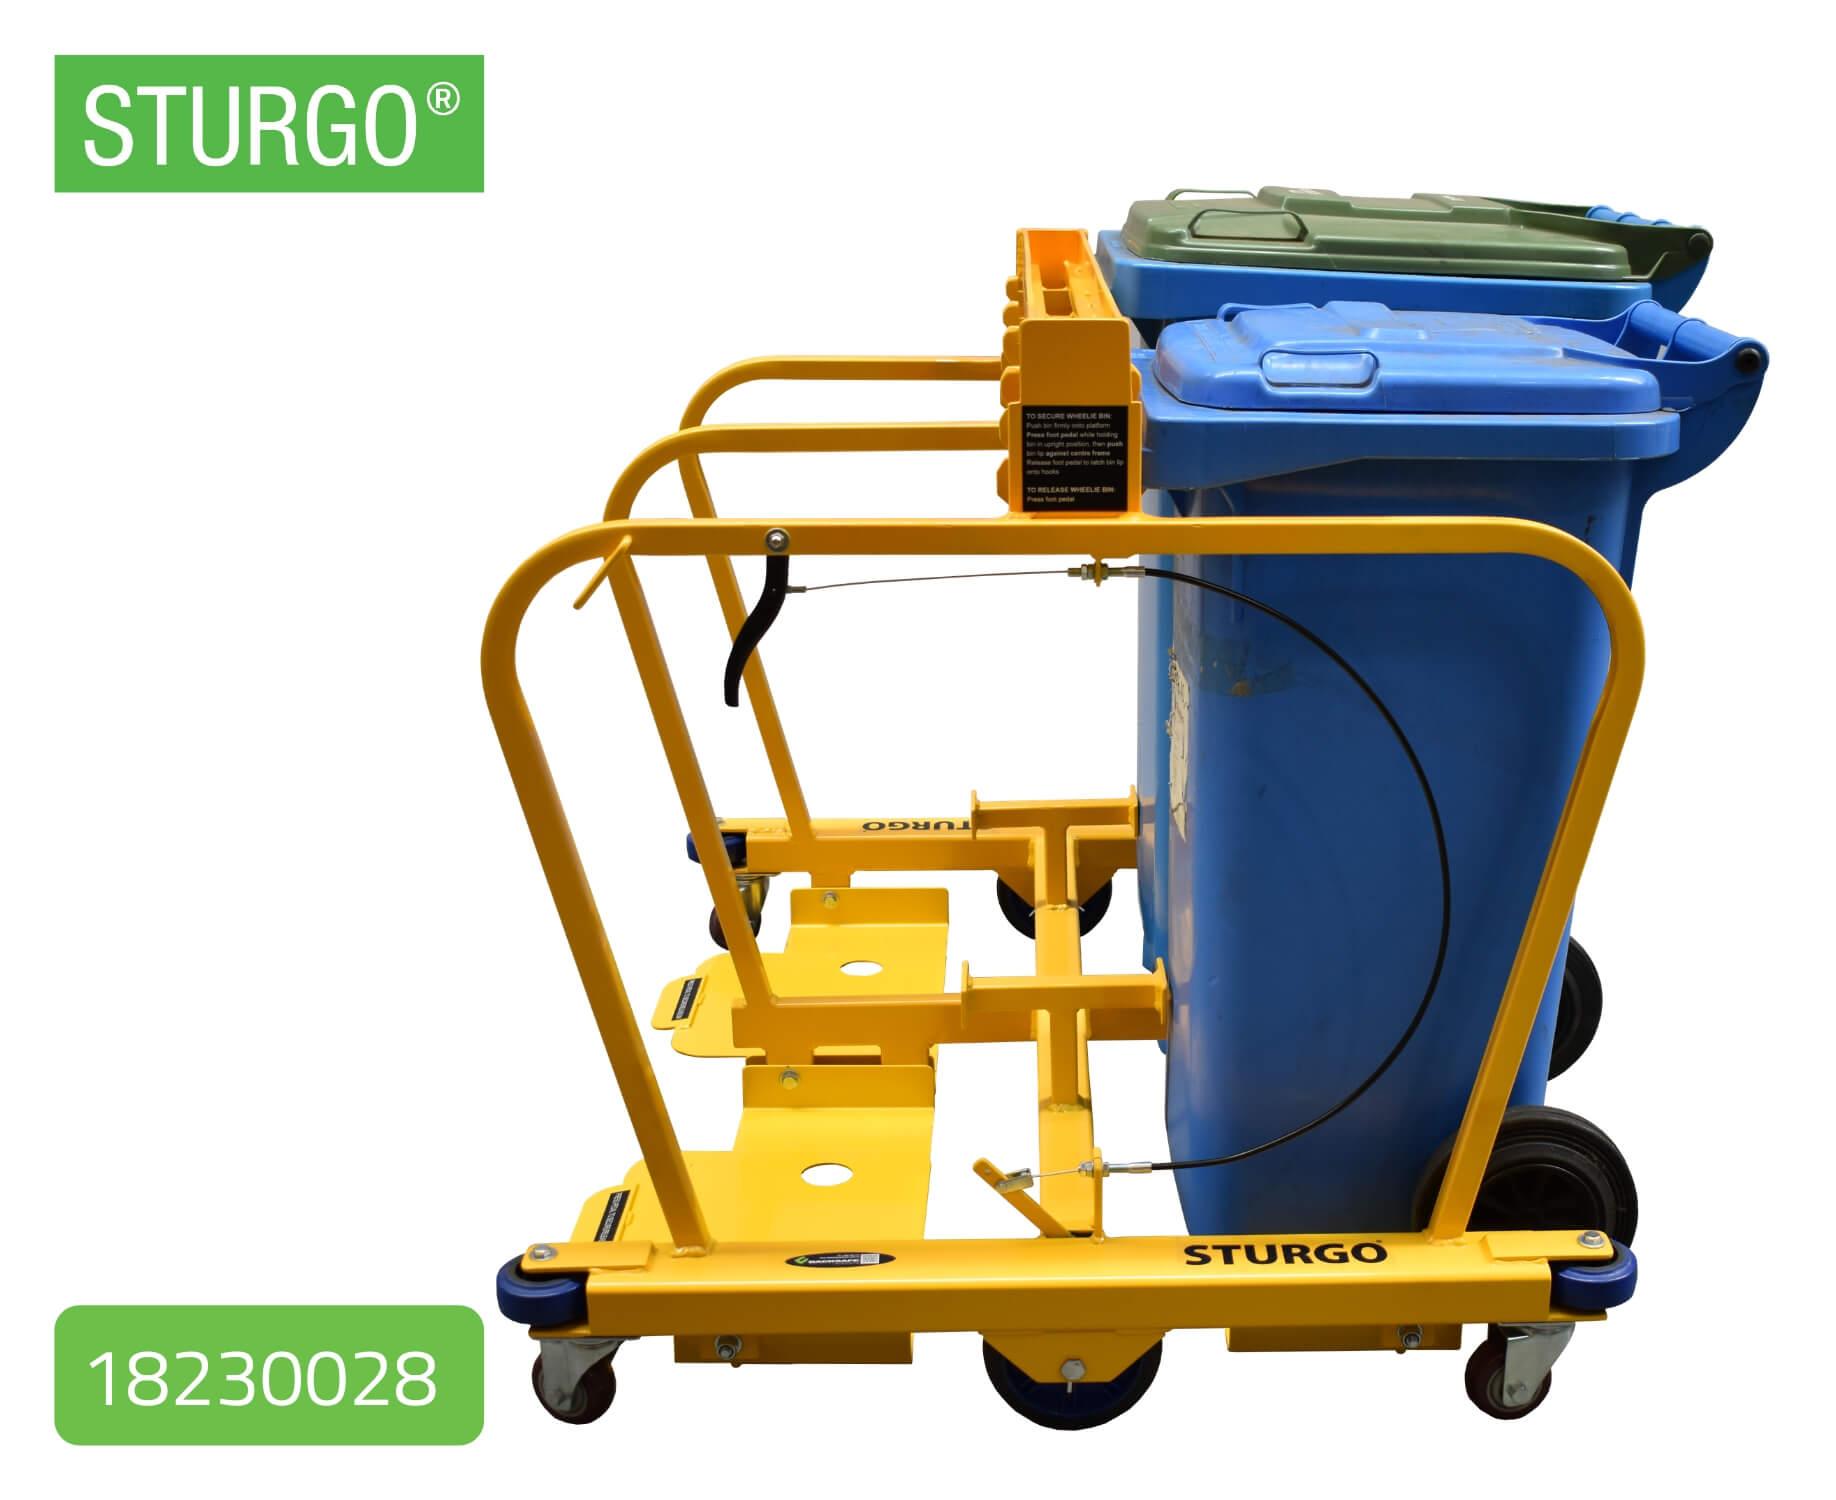 Custom STURGO® Wheelie Bin Trolley 14080